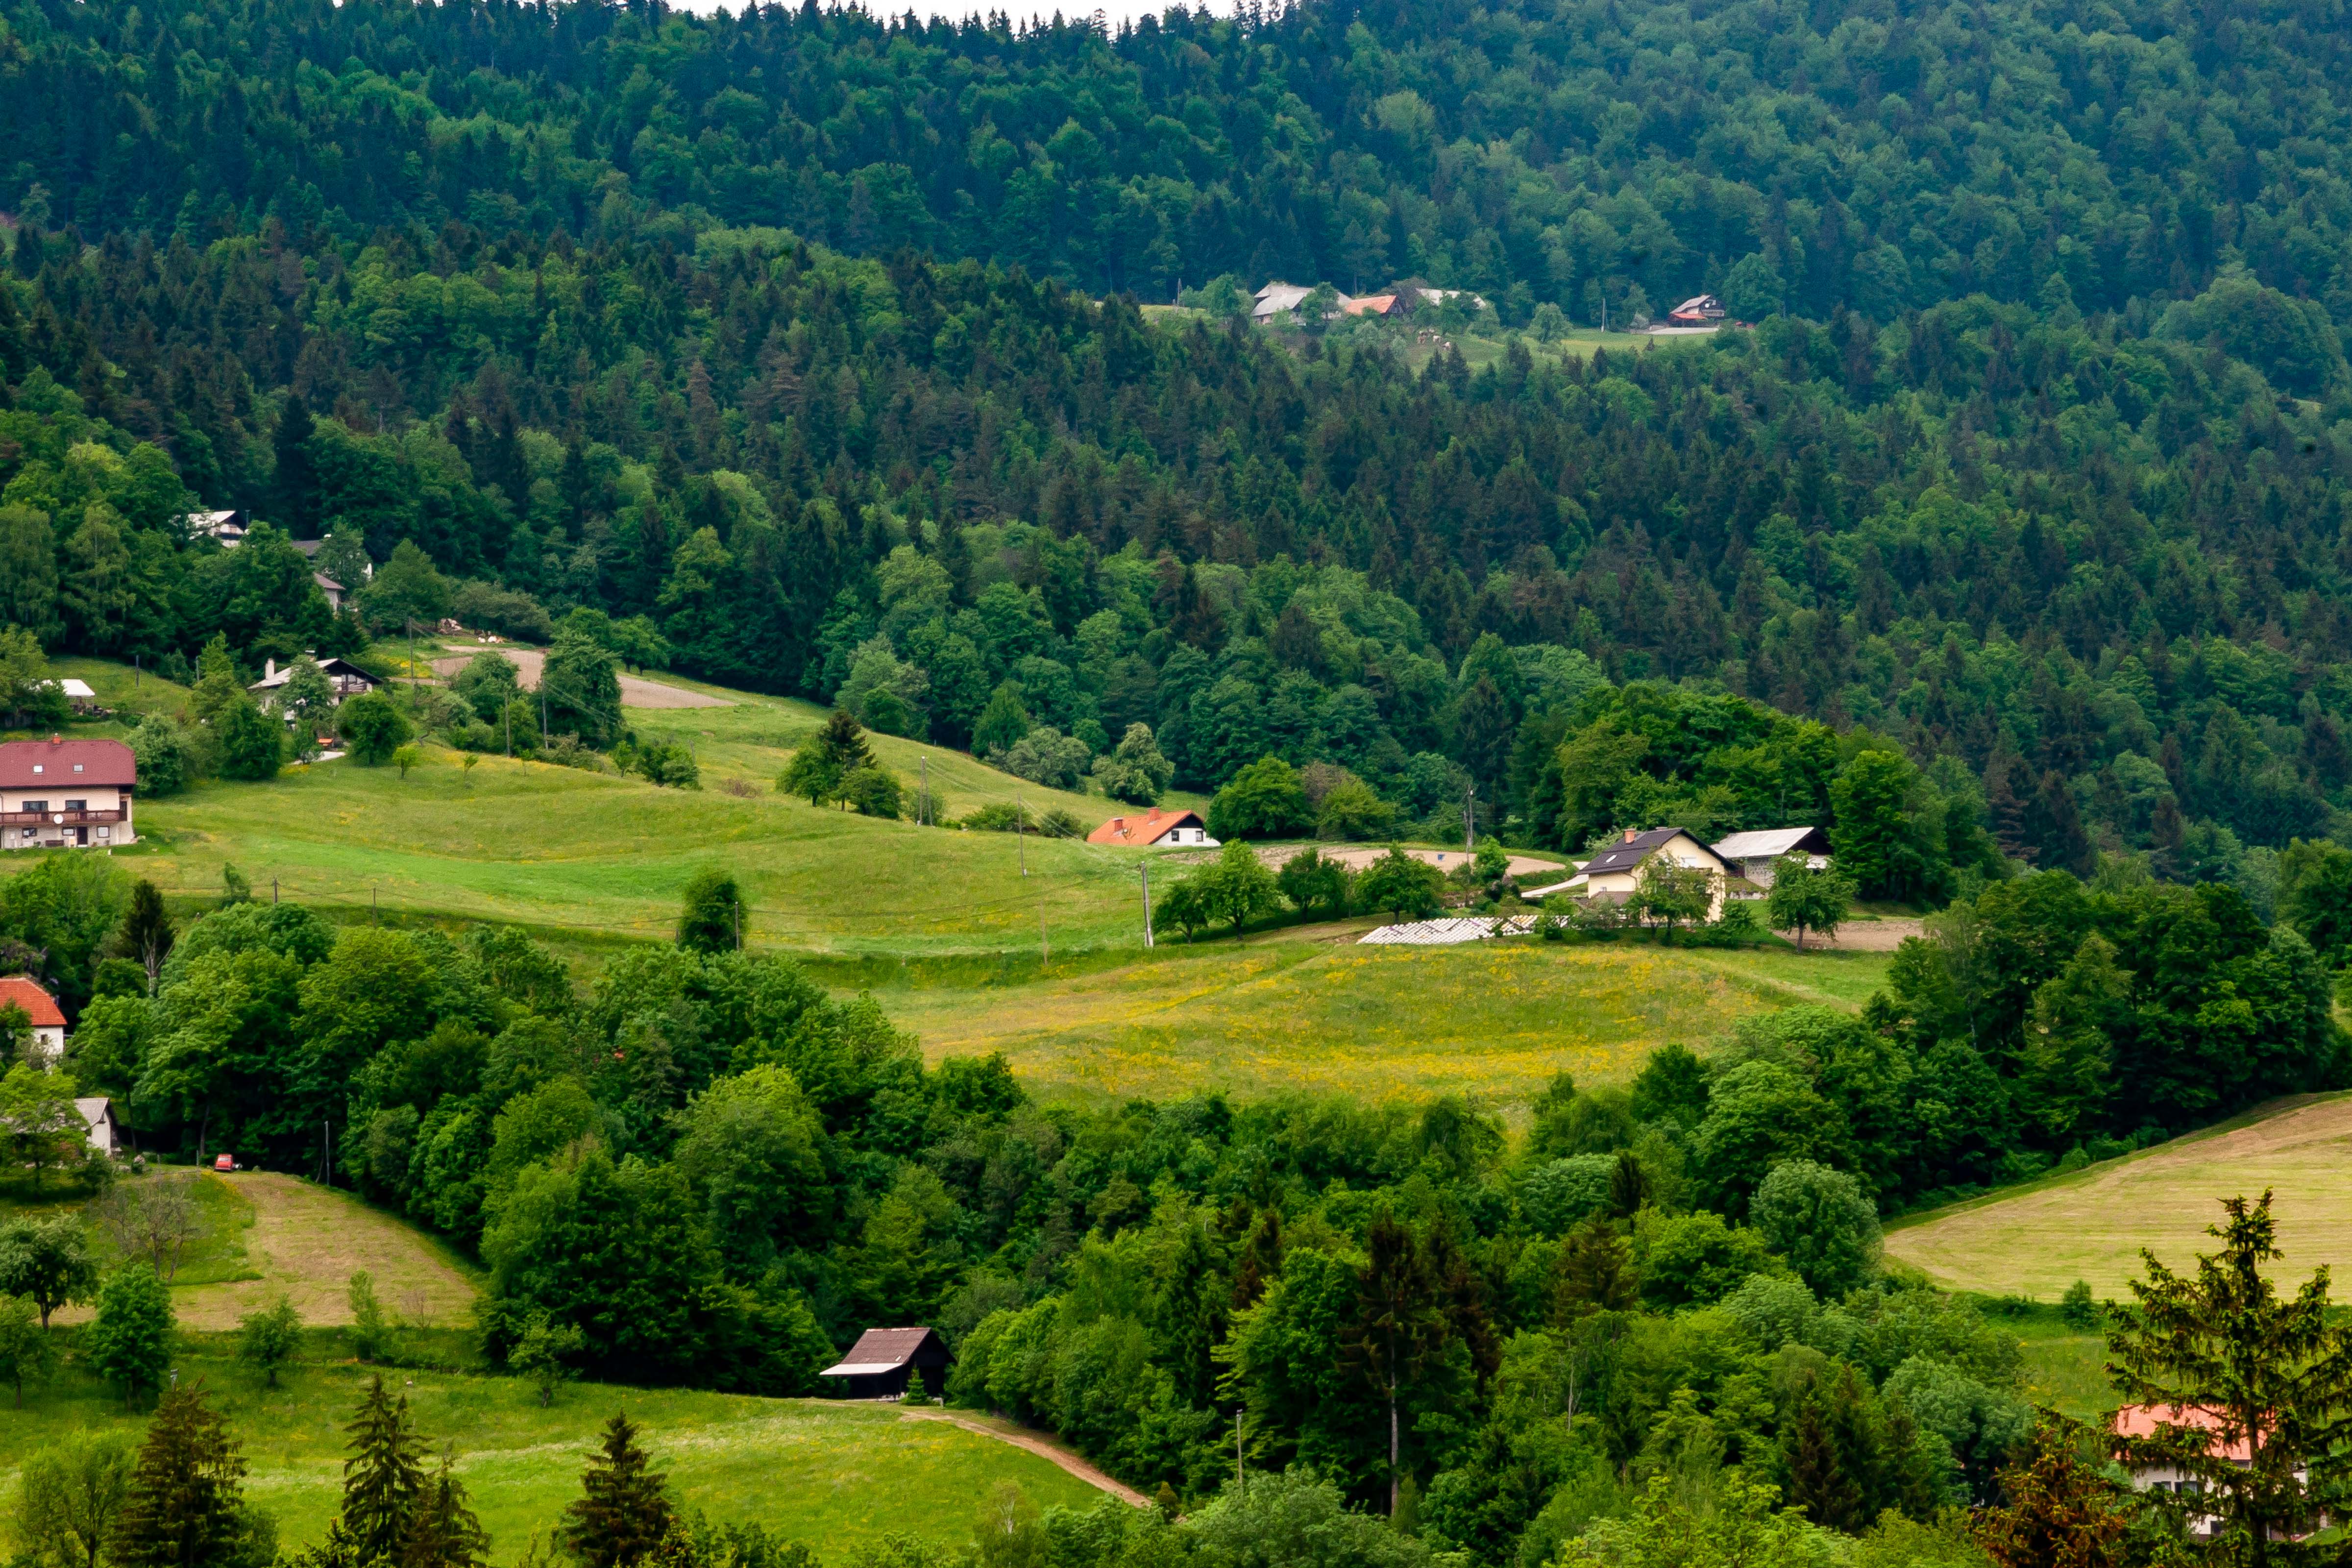 Slovenia, Hrastnik Prov, Countryside, 2006, IMG 7725